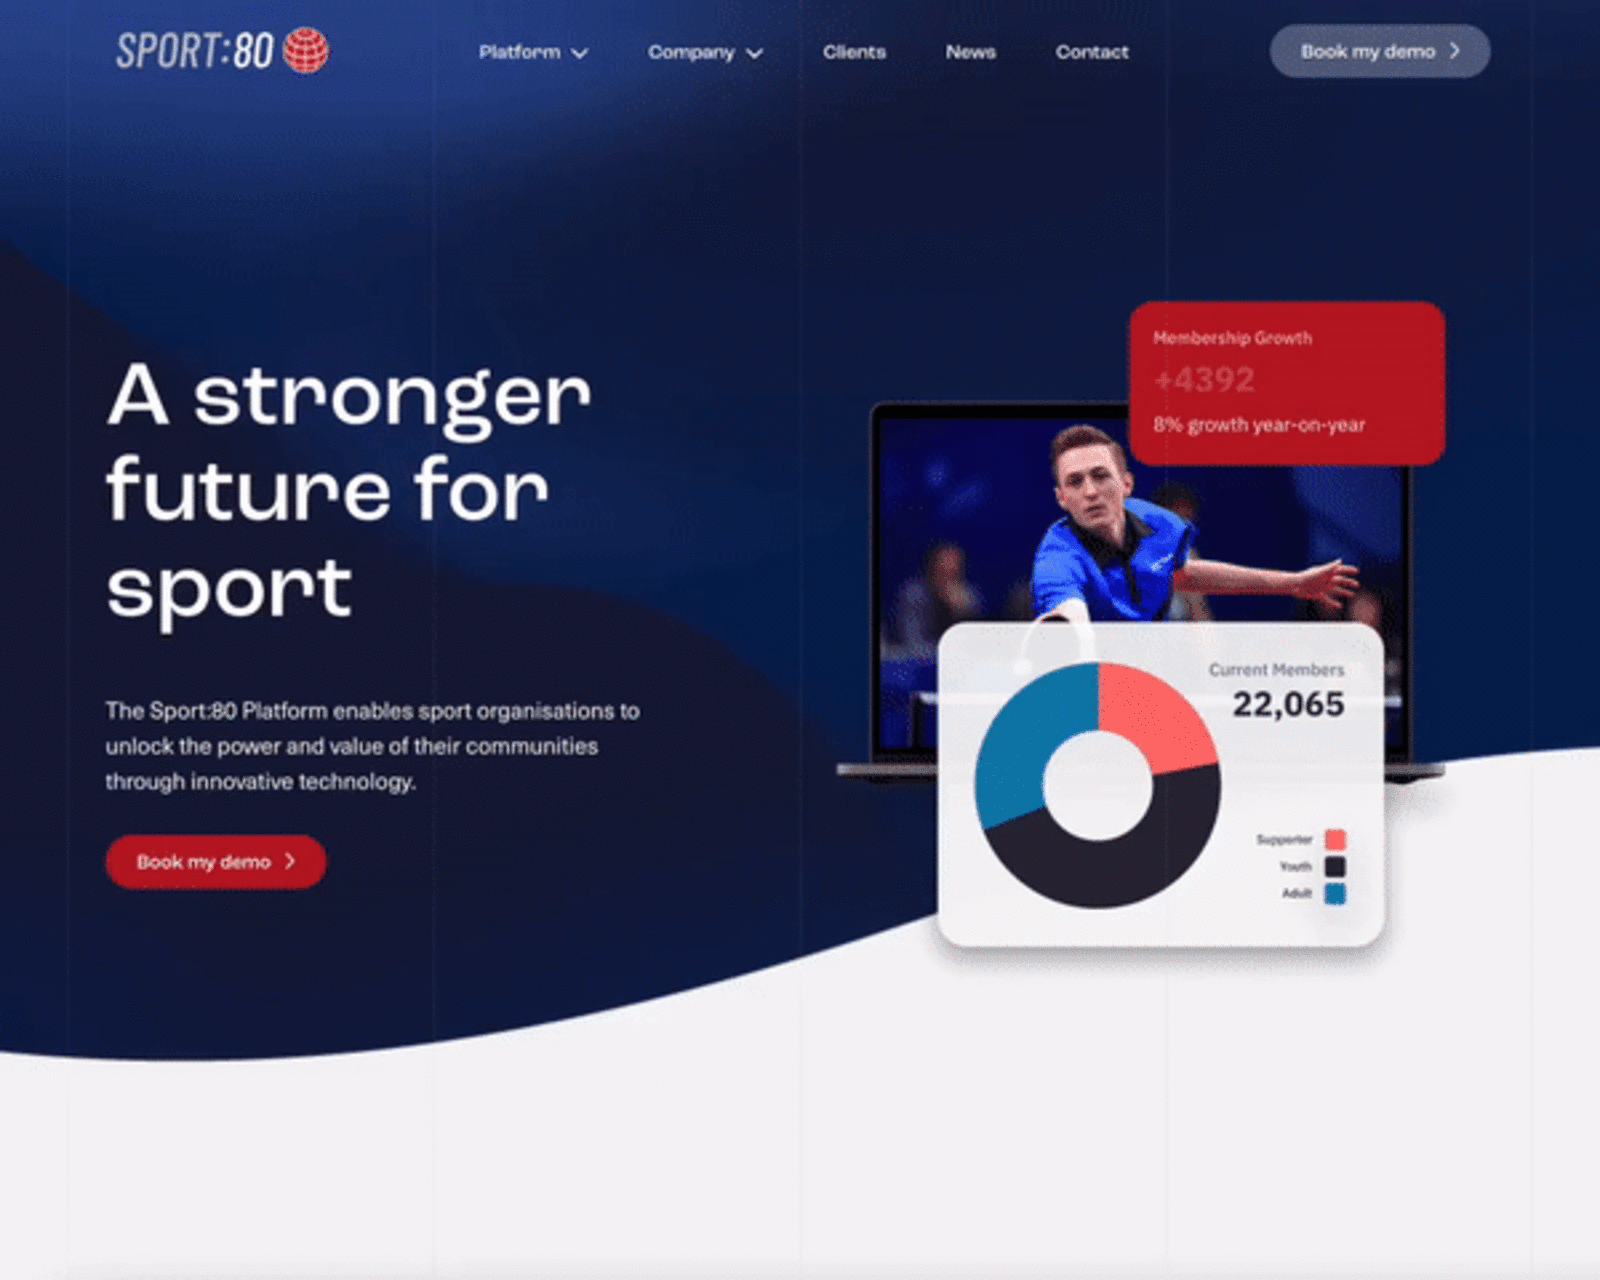 Sport:80 - Building a website for a global sports platform